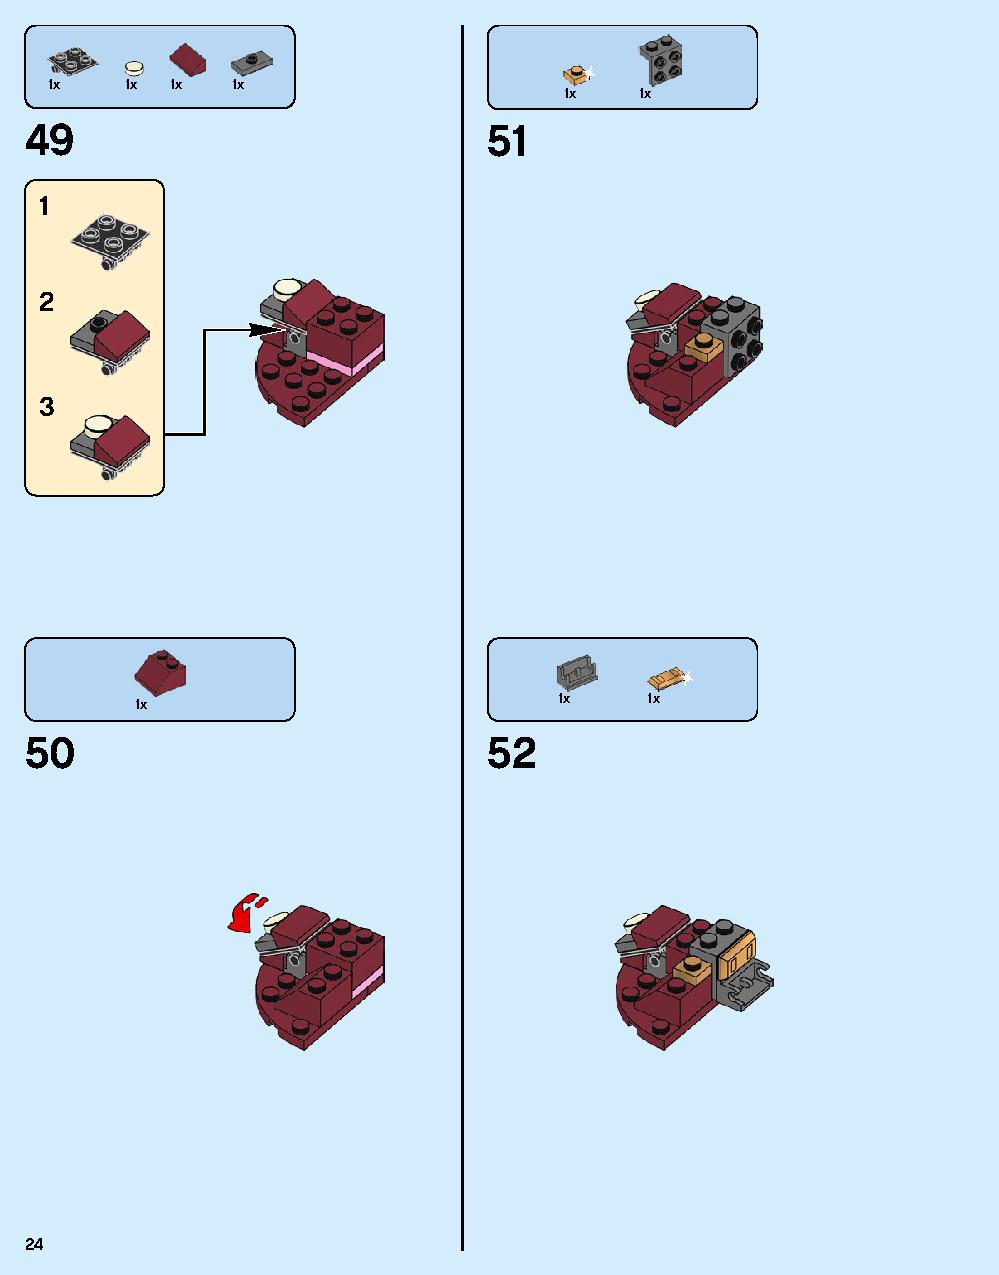 ハルクバスター：ウルトロン・エディション 76105 レゴの商品情報 レゴの説明書・組立方法 24 page